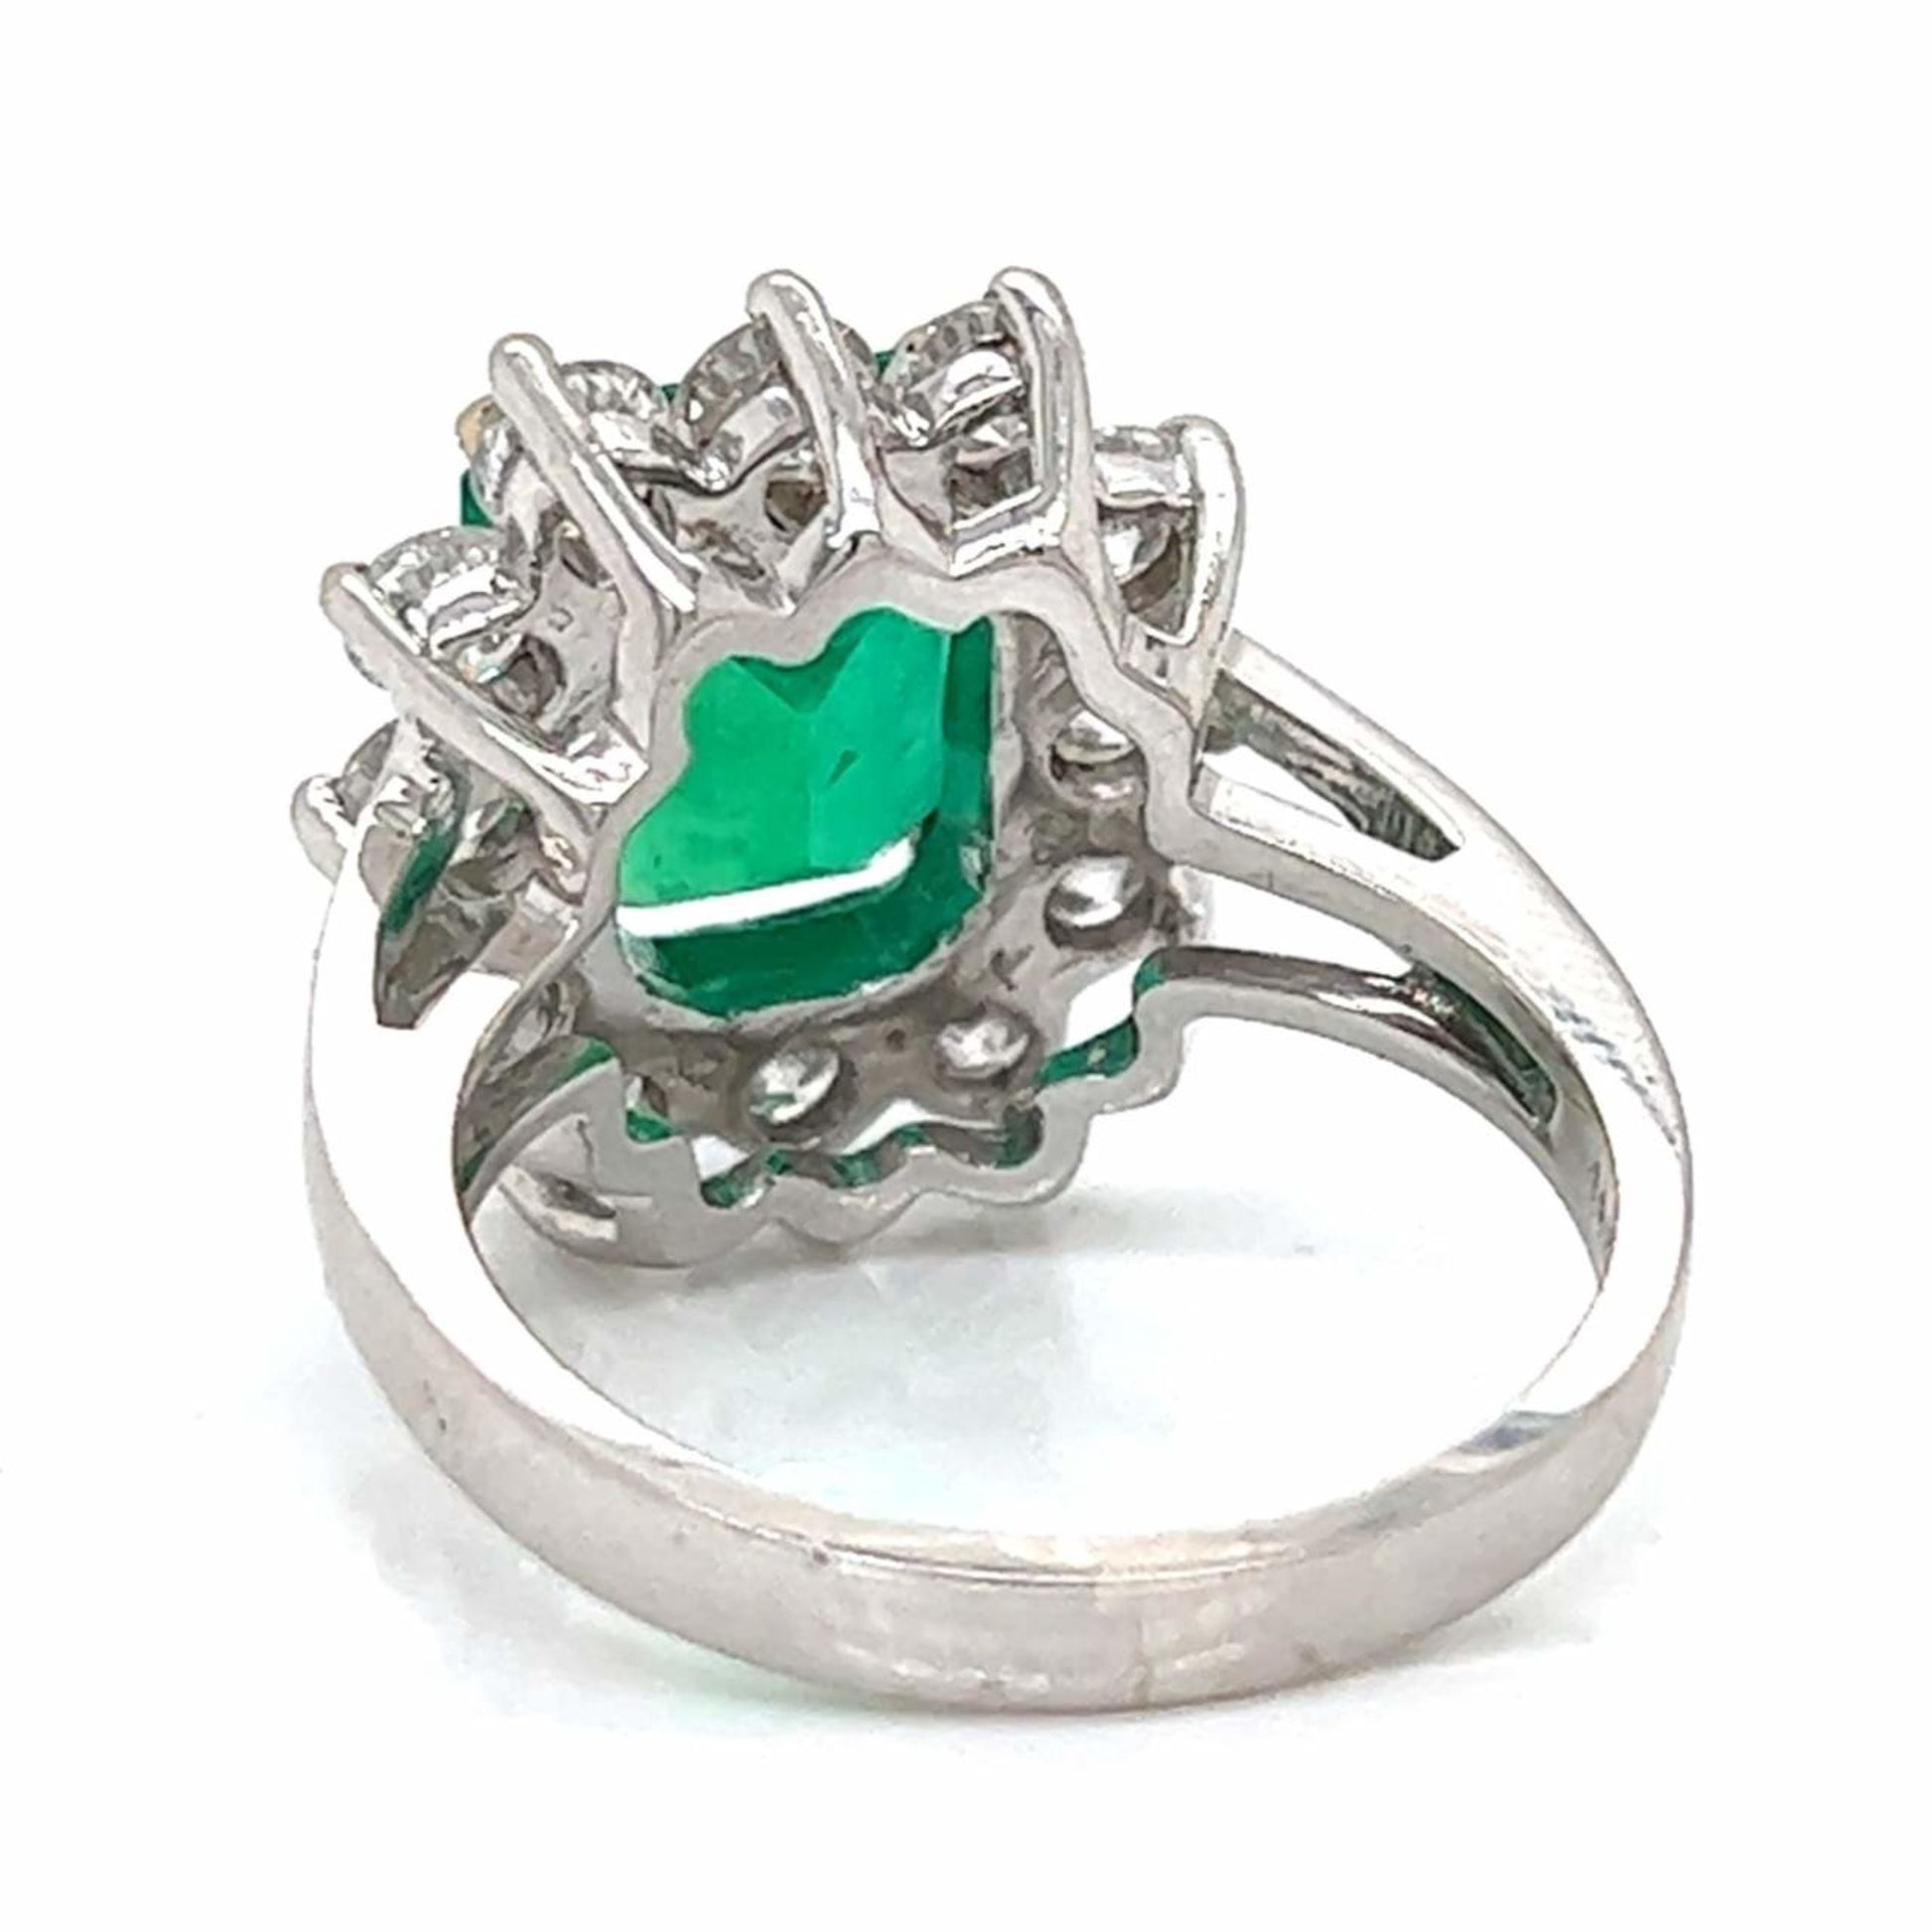 Post-1980s 14KT White Gold Emerald & Diamond Ring back